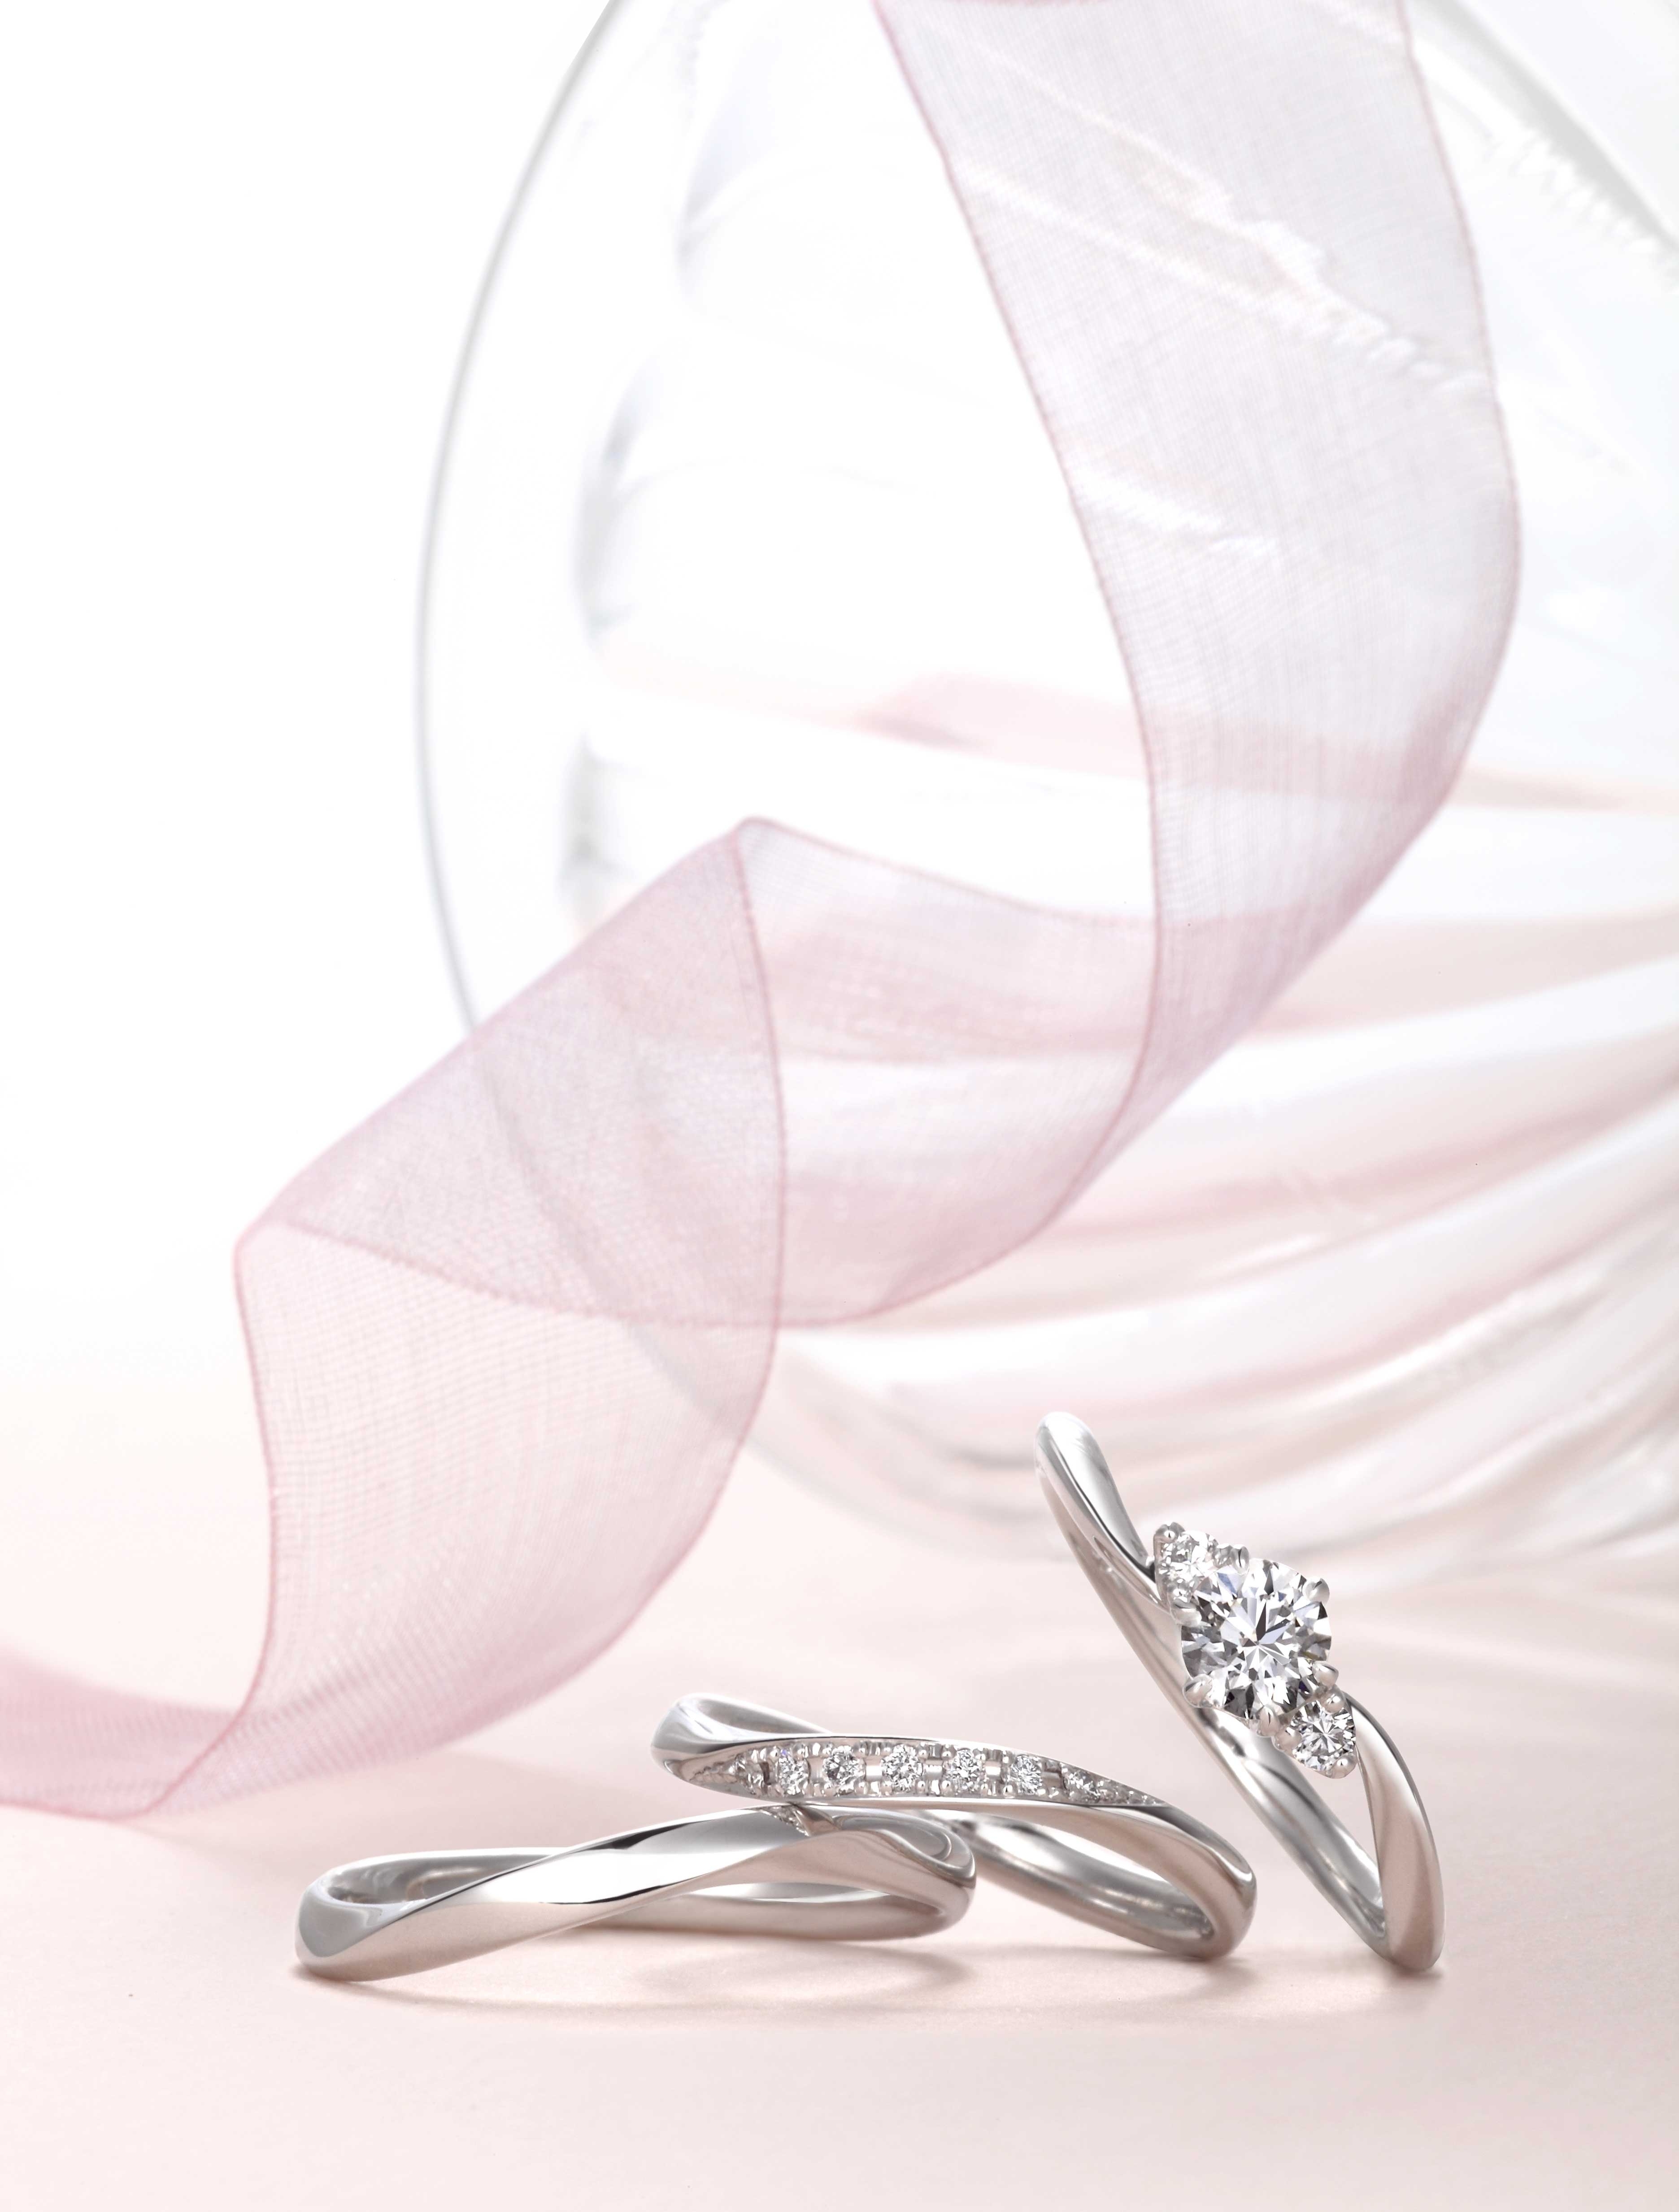 オリエンタルダイヤモンド「星の砂」ブライダル誕生20周年目のブランド 